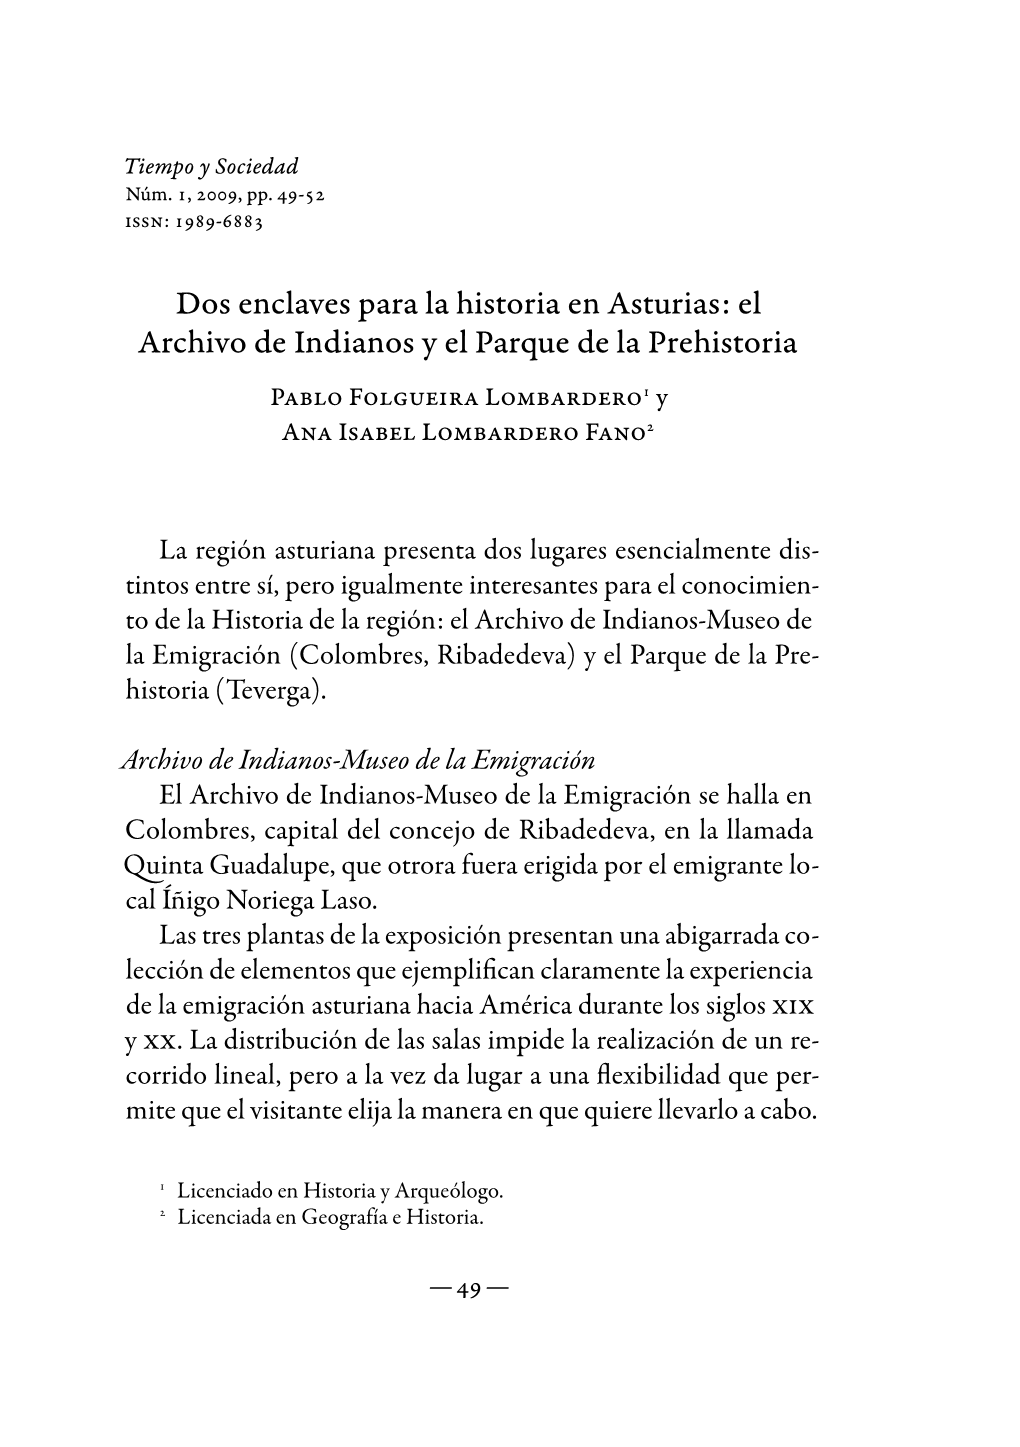 Dos Enclaves Para La Historia En Asturias: El Archivo De Indianos Y El Parque De La Prehistoria Pablo Folgueira Lombardero1 Y Ana Isabel Lombardero Fano2